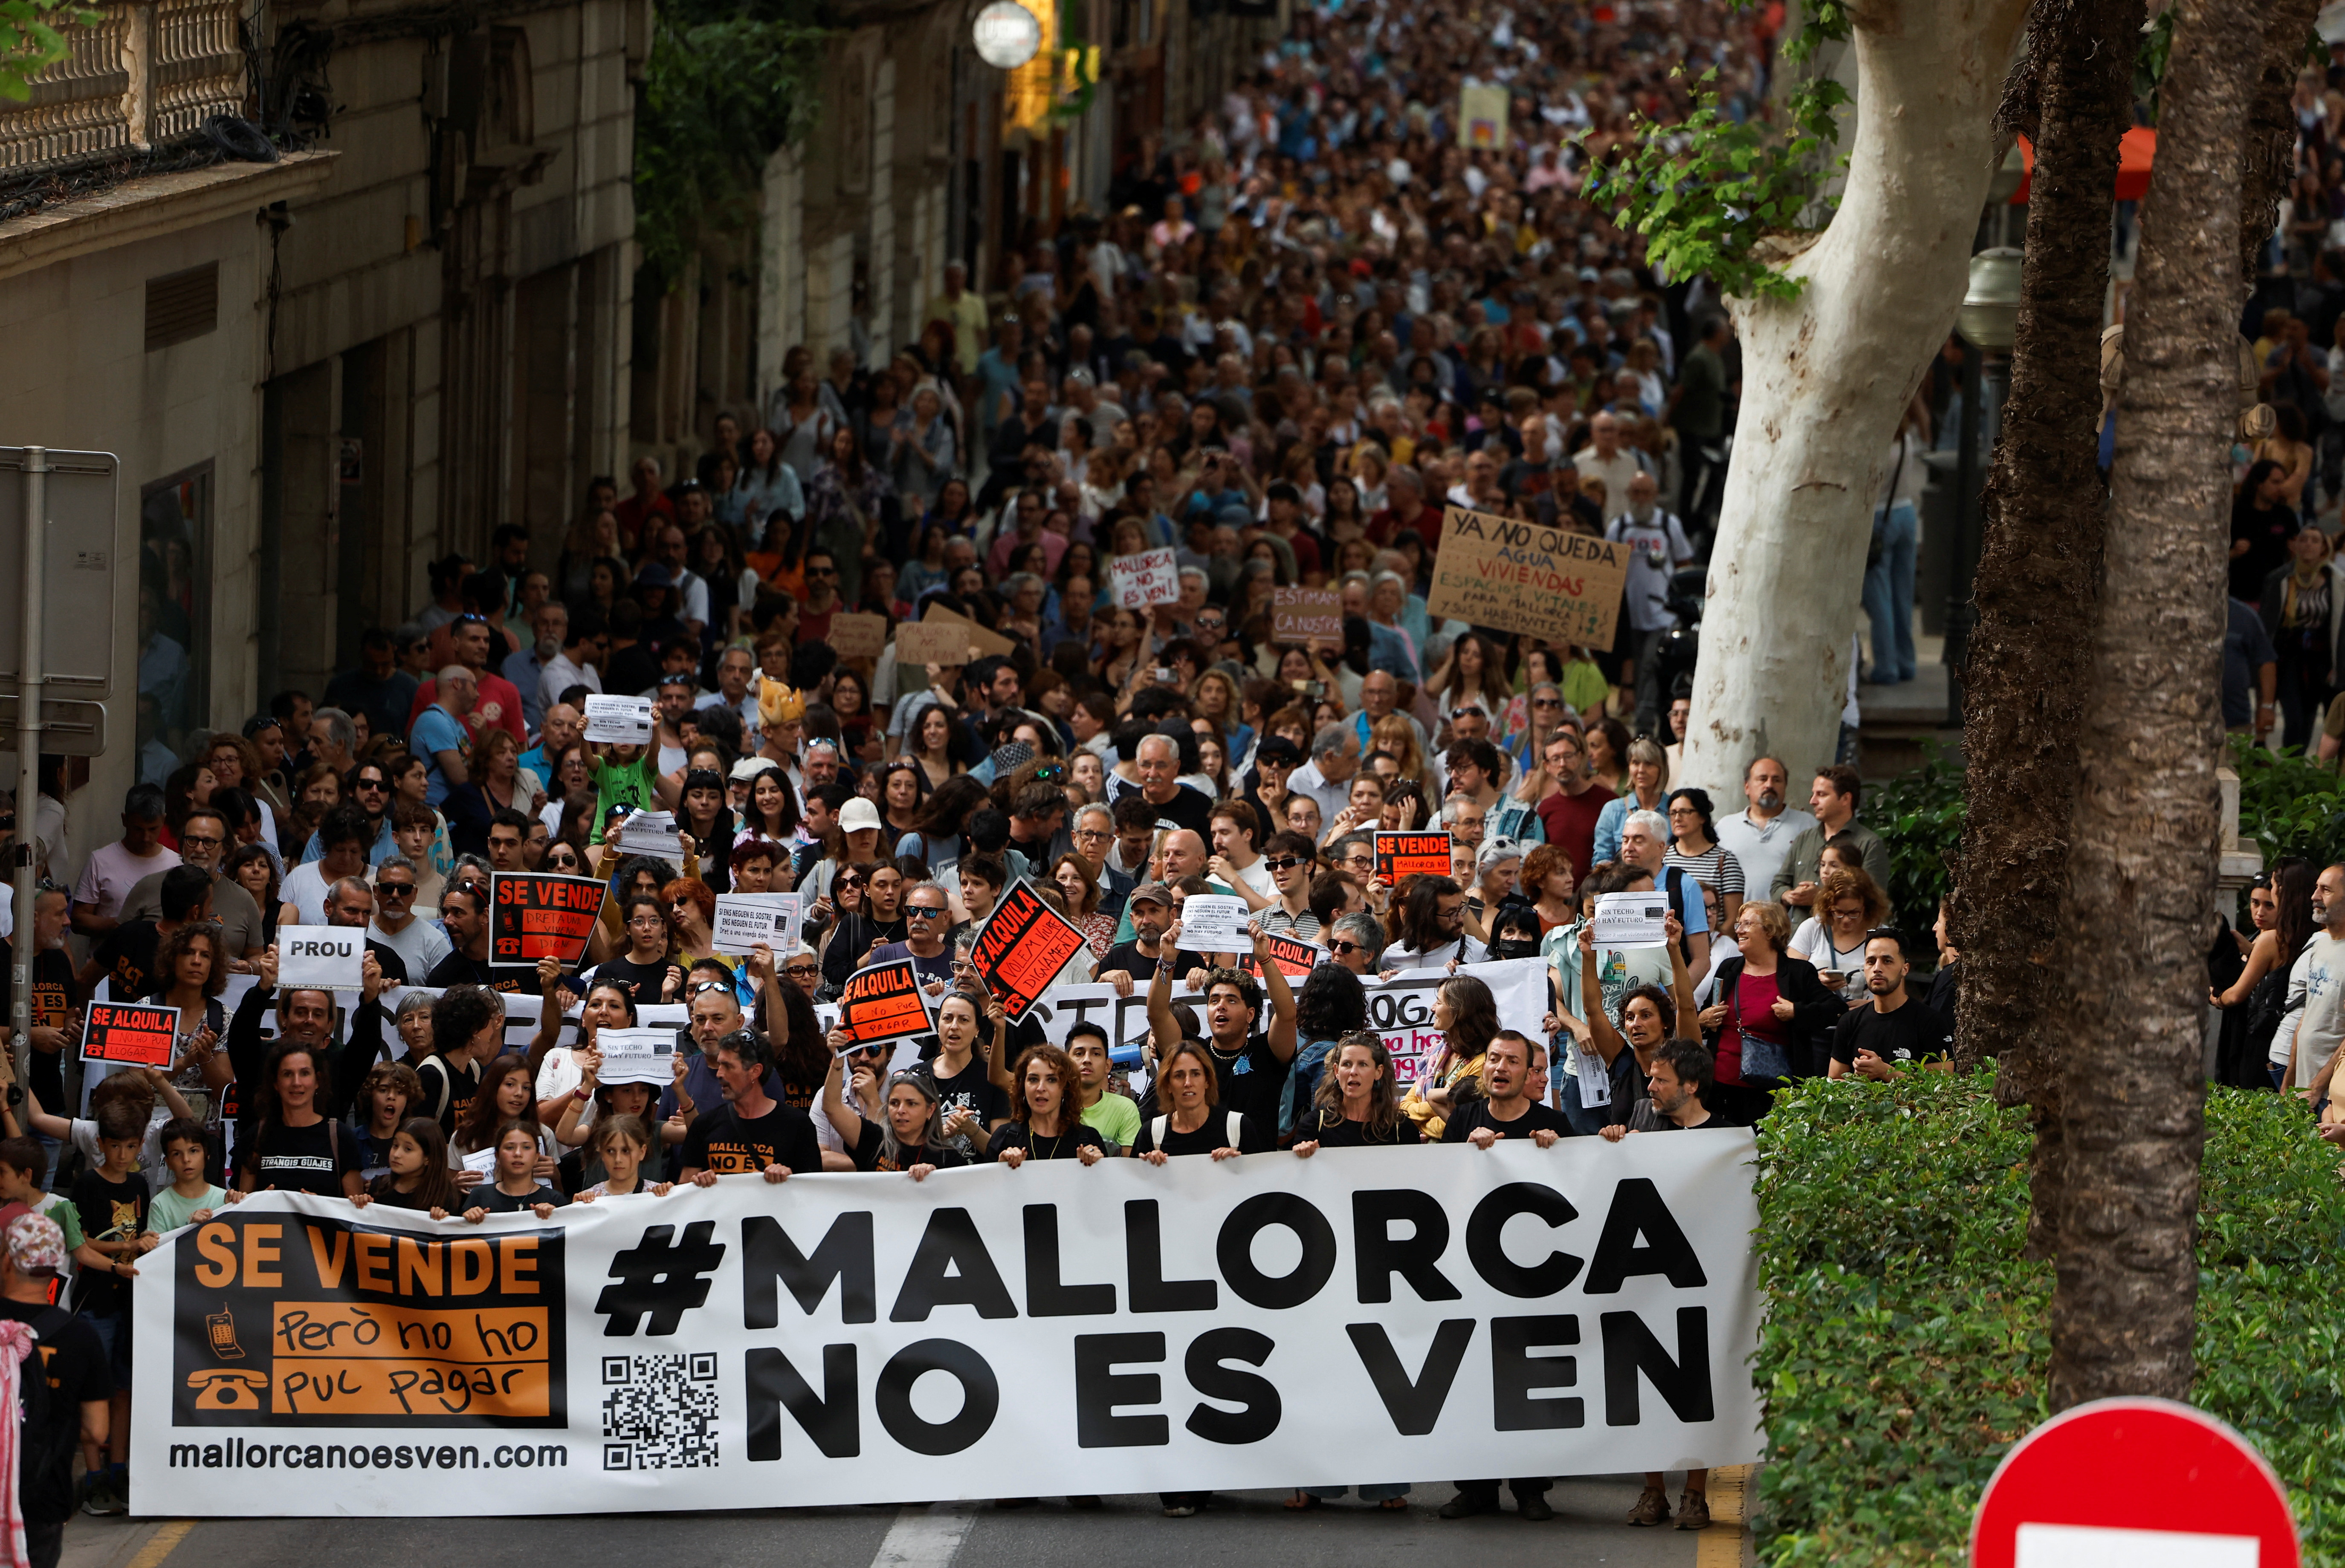 スペインリゾートで住民数千人がデモ、観光客急増の弊害に抗議